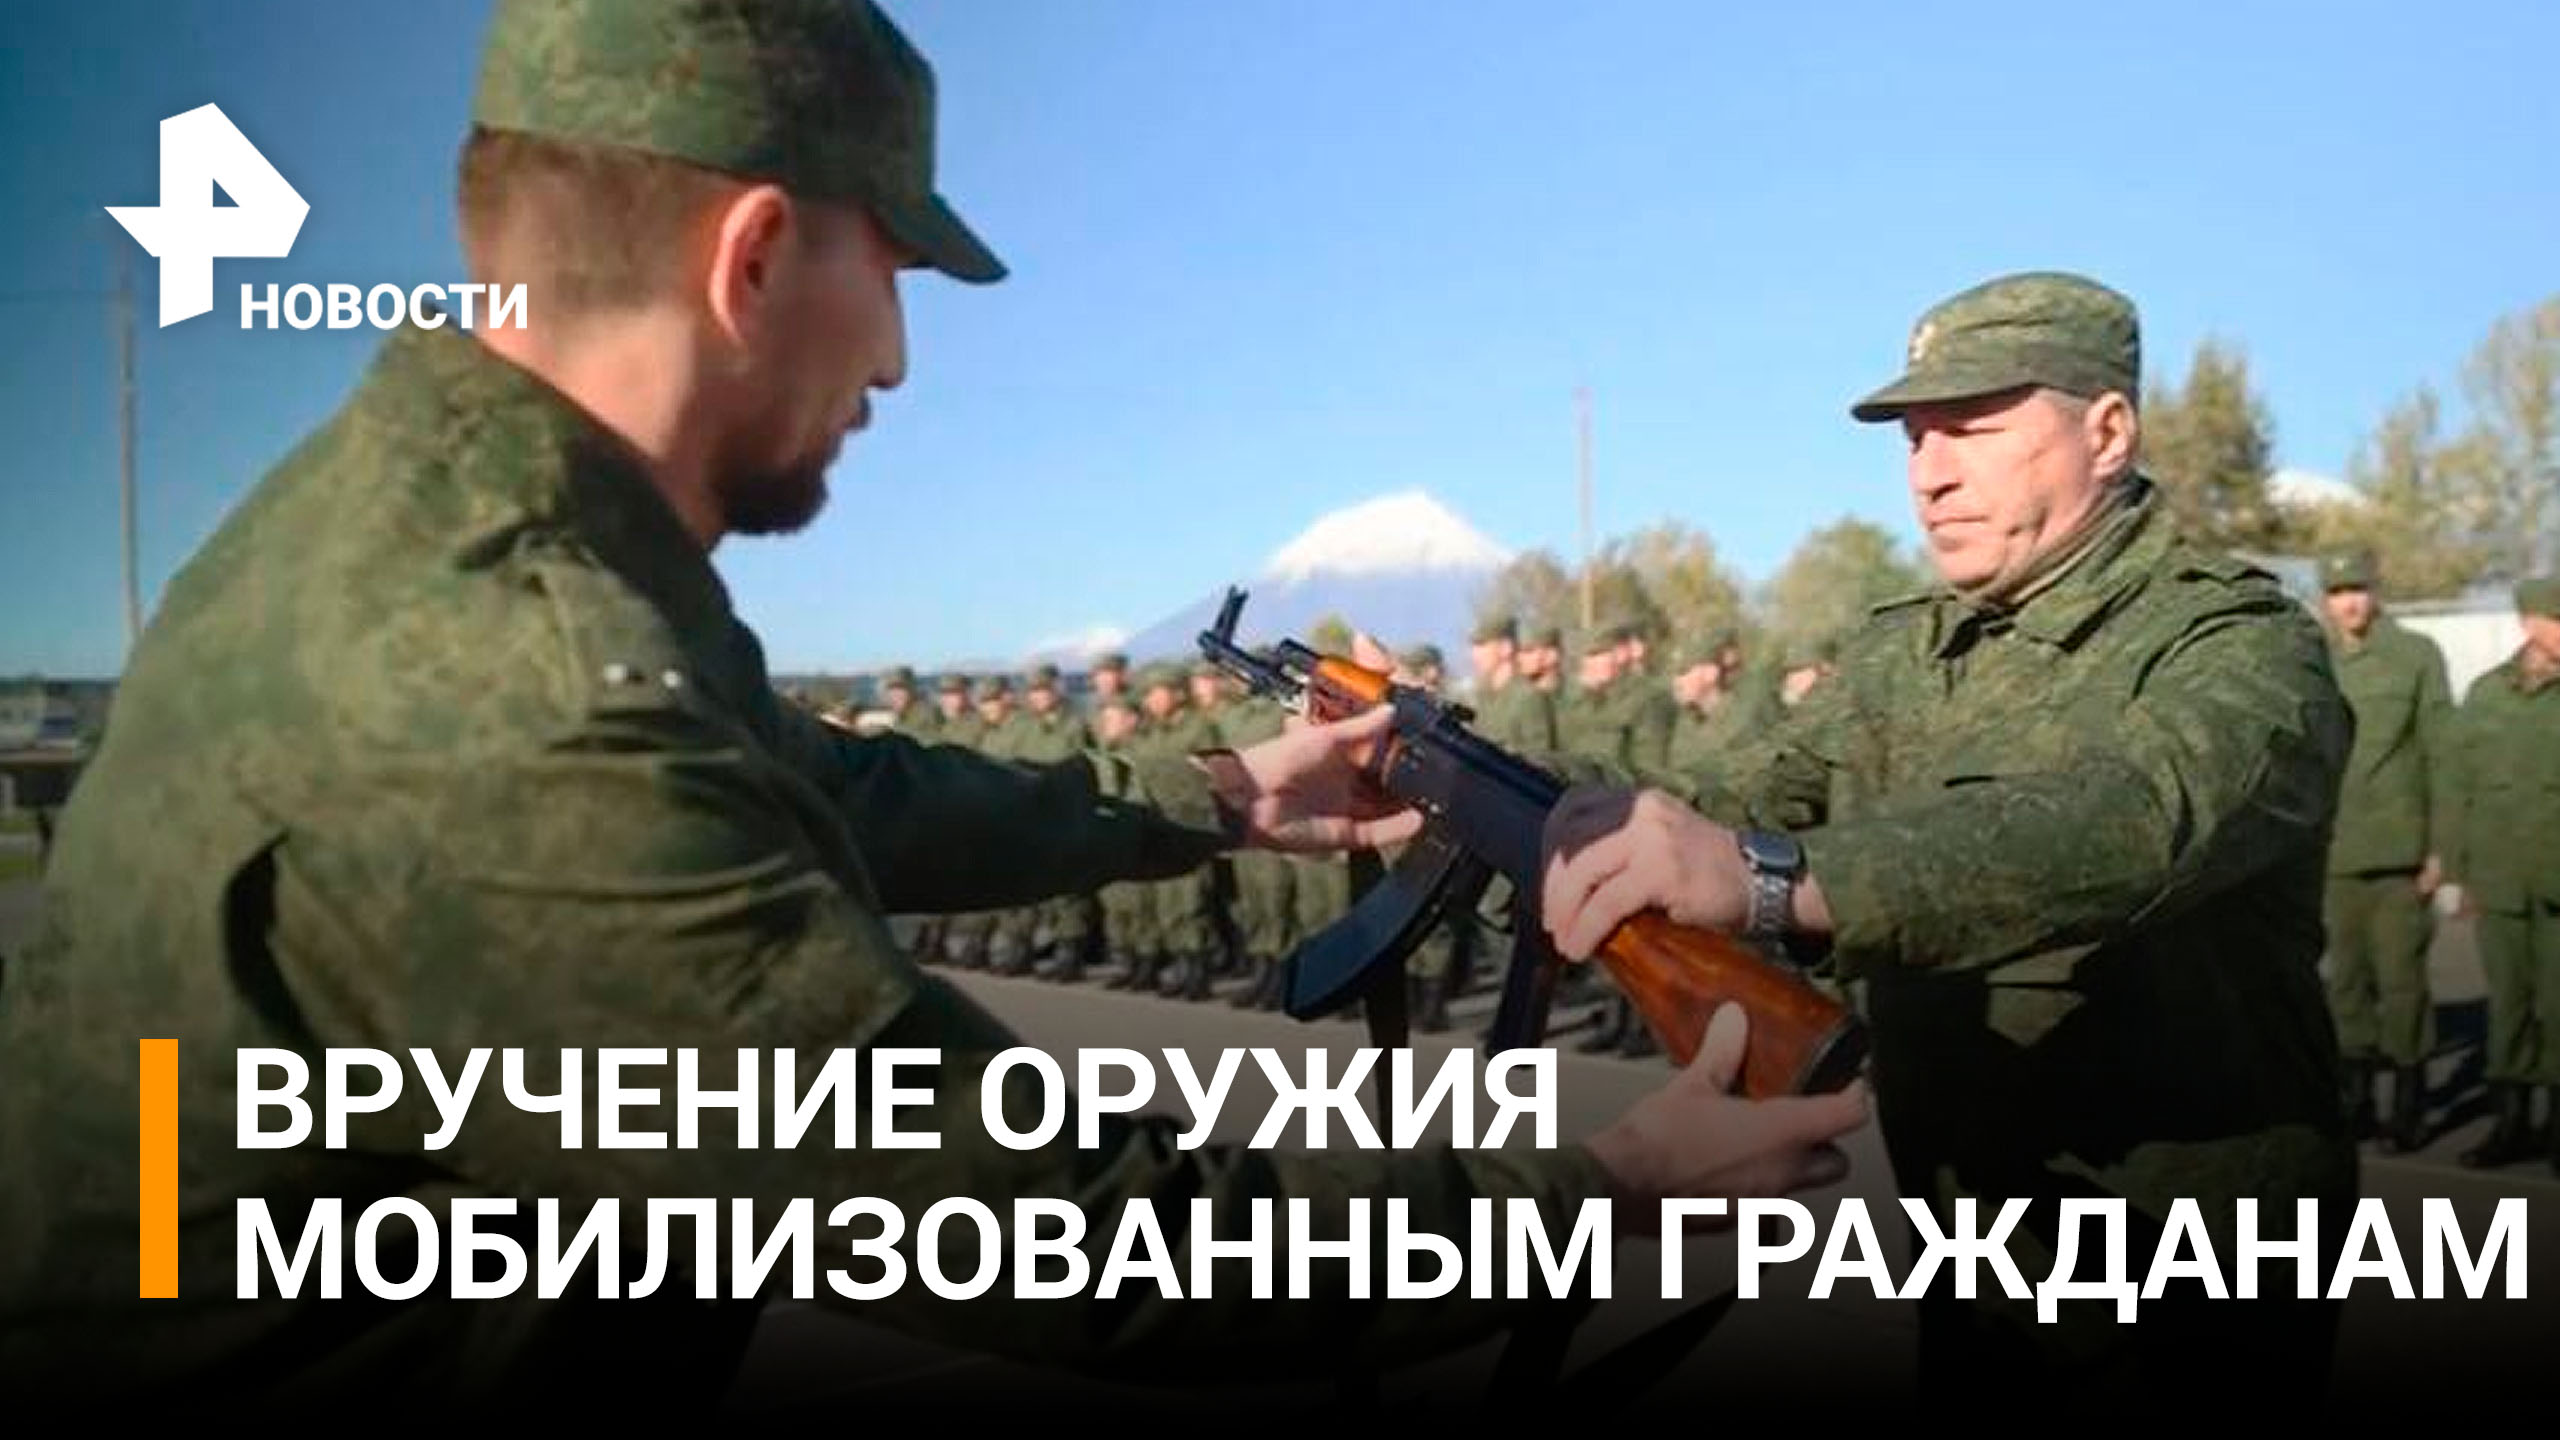 Мобилизованным гражданам вручили боевое оружие на Камчатке / РЕН Новости